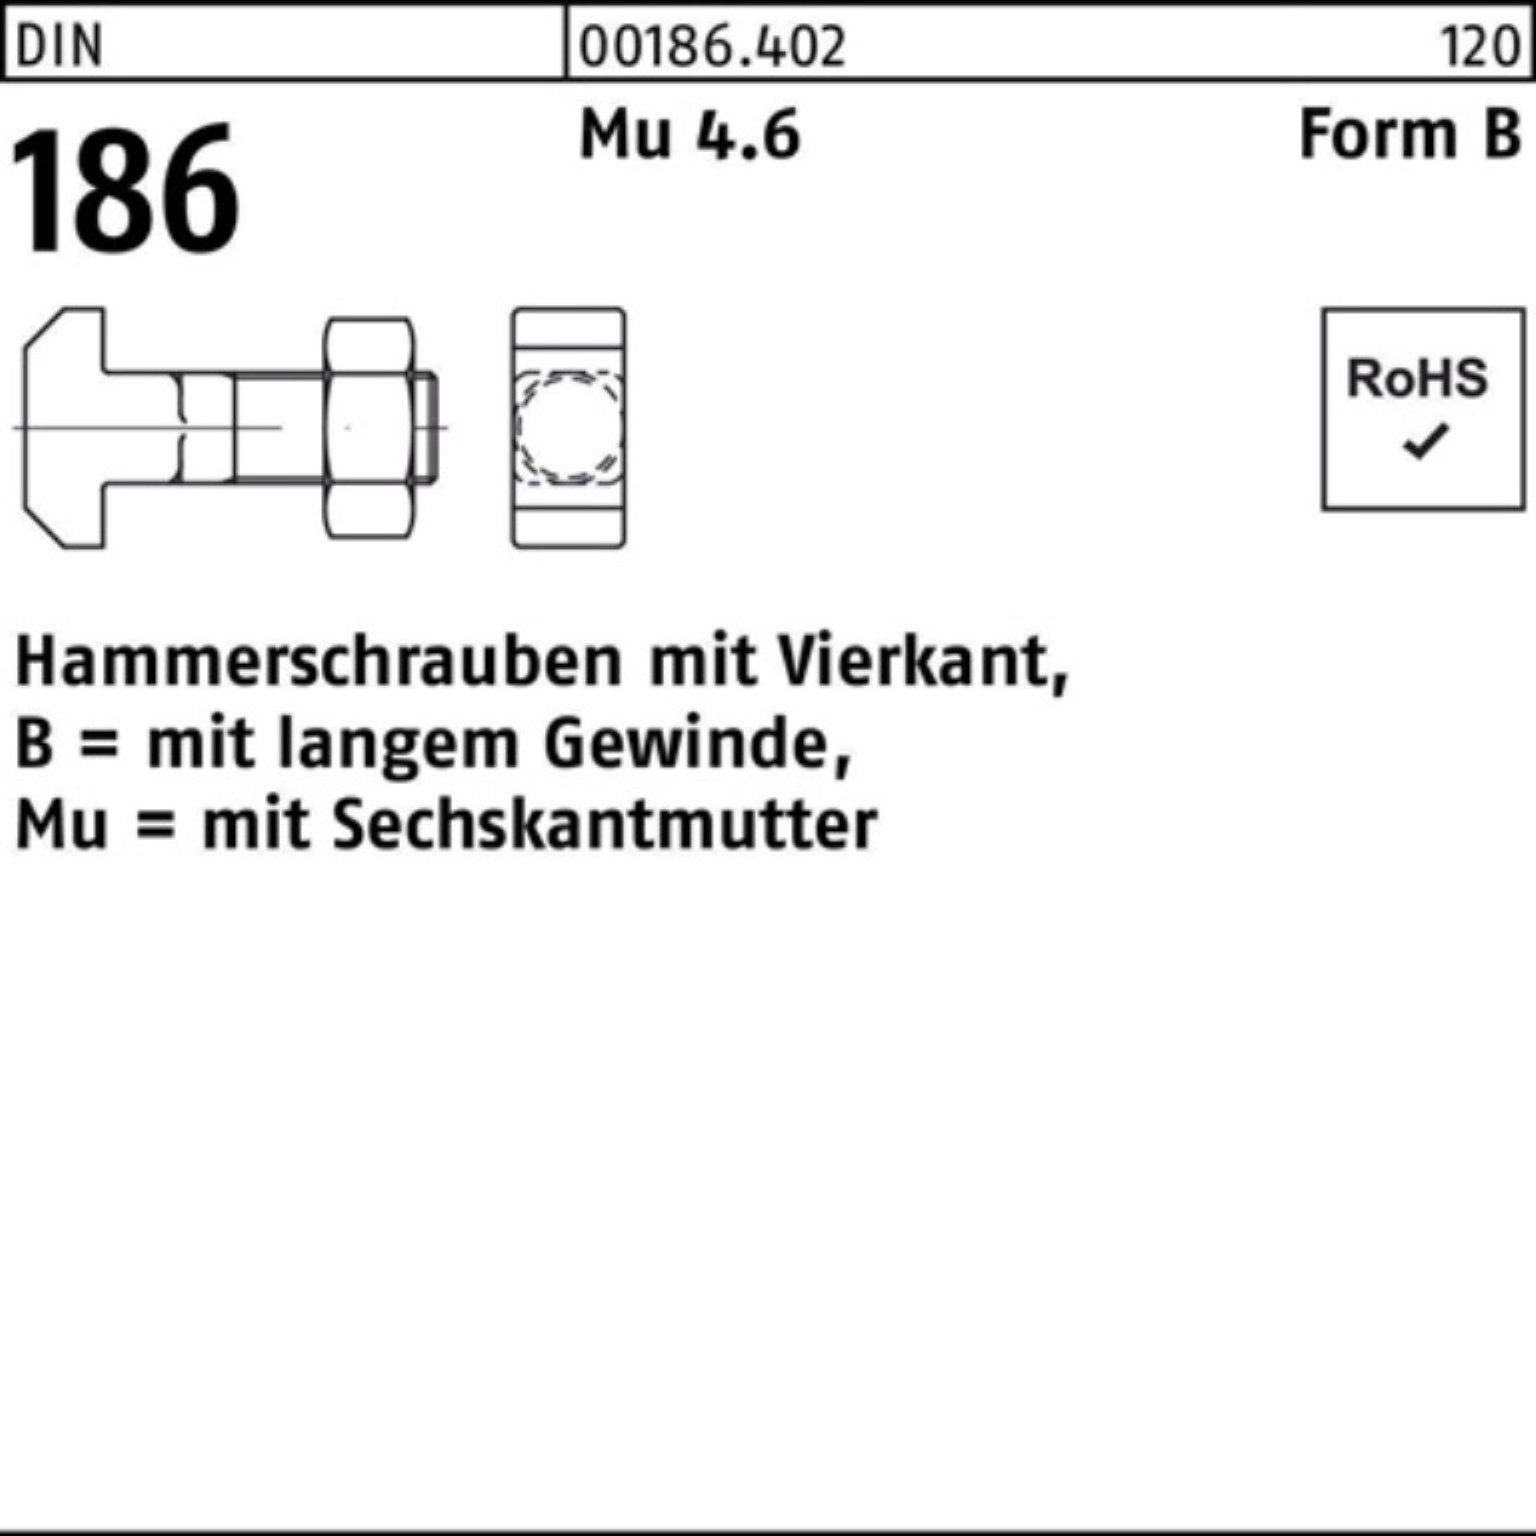 Reyher Schraube 100er Pack Hammerschraube DIN 186 FormB Vierkant 6-ktmutter BM 8x 25 M